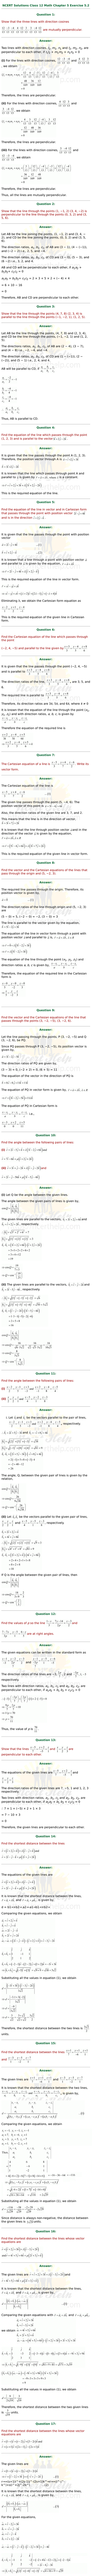 ex.11.2 Class 12 Math Chapter 11 ncert solutions